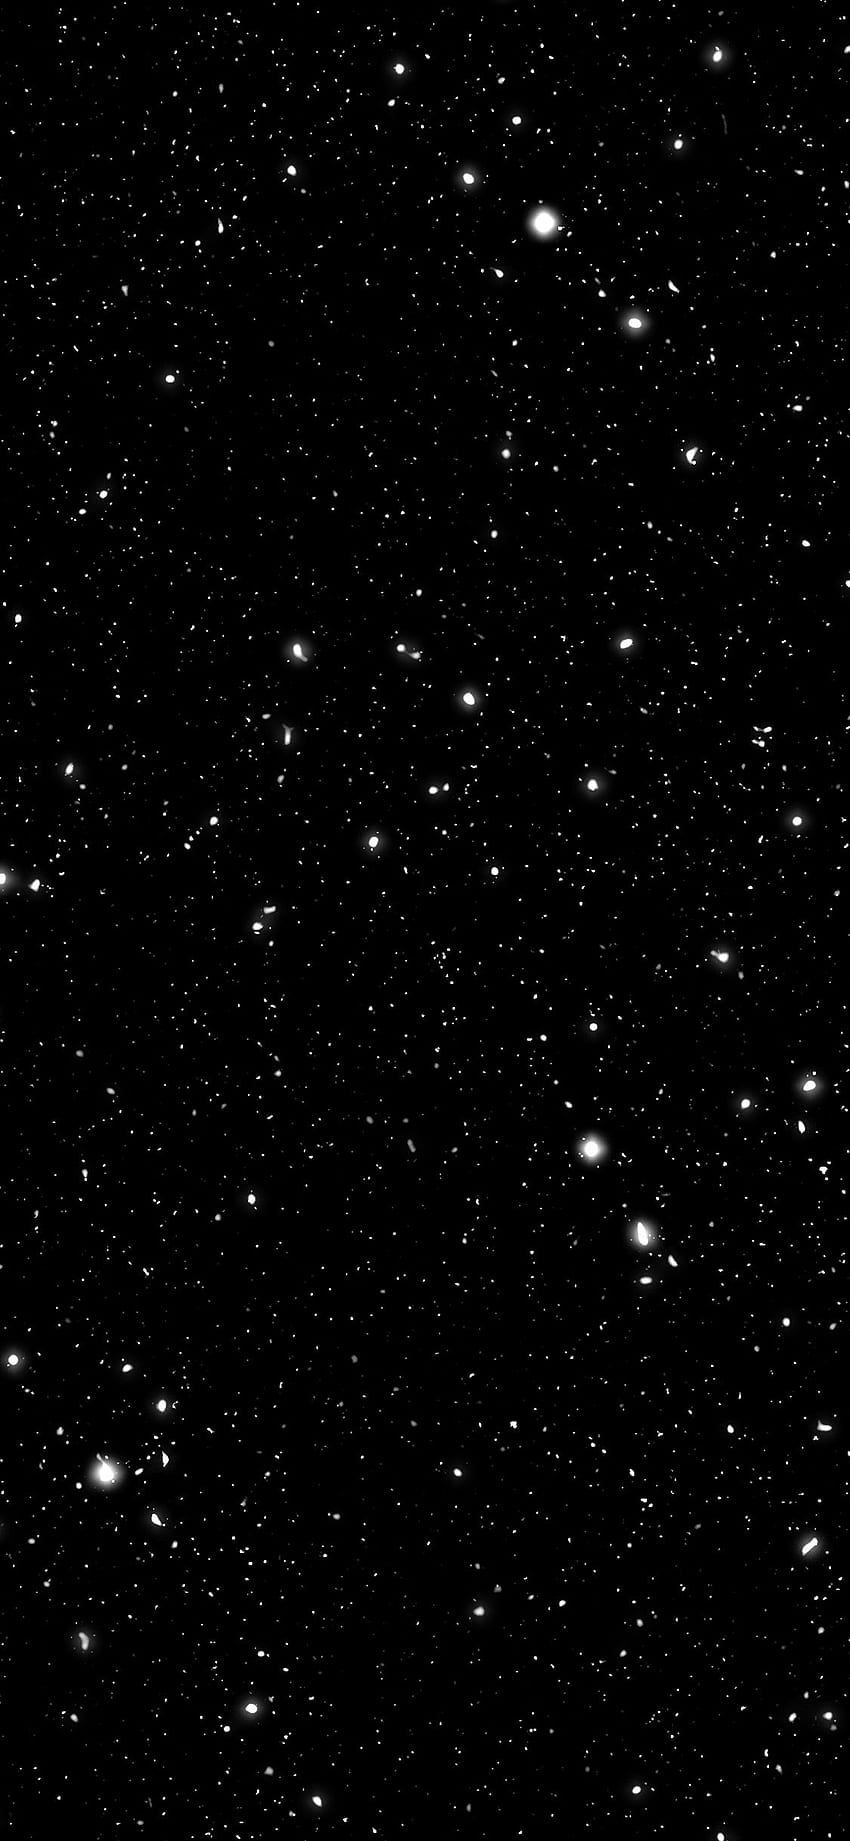 Black Galaxy: Vào không gian đen tối để khám phá vịnh thiên đường Black Galaxy! Đây là một hình ảnh đẹp mắt, nơi những cụm sao lấp lánh và tạo ra một thế giới khác, bí ẩn và không gian.